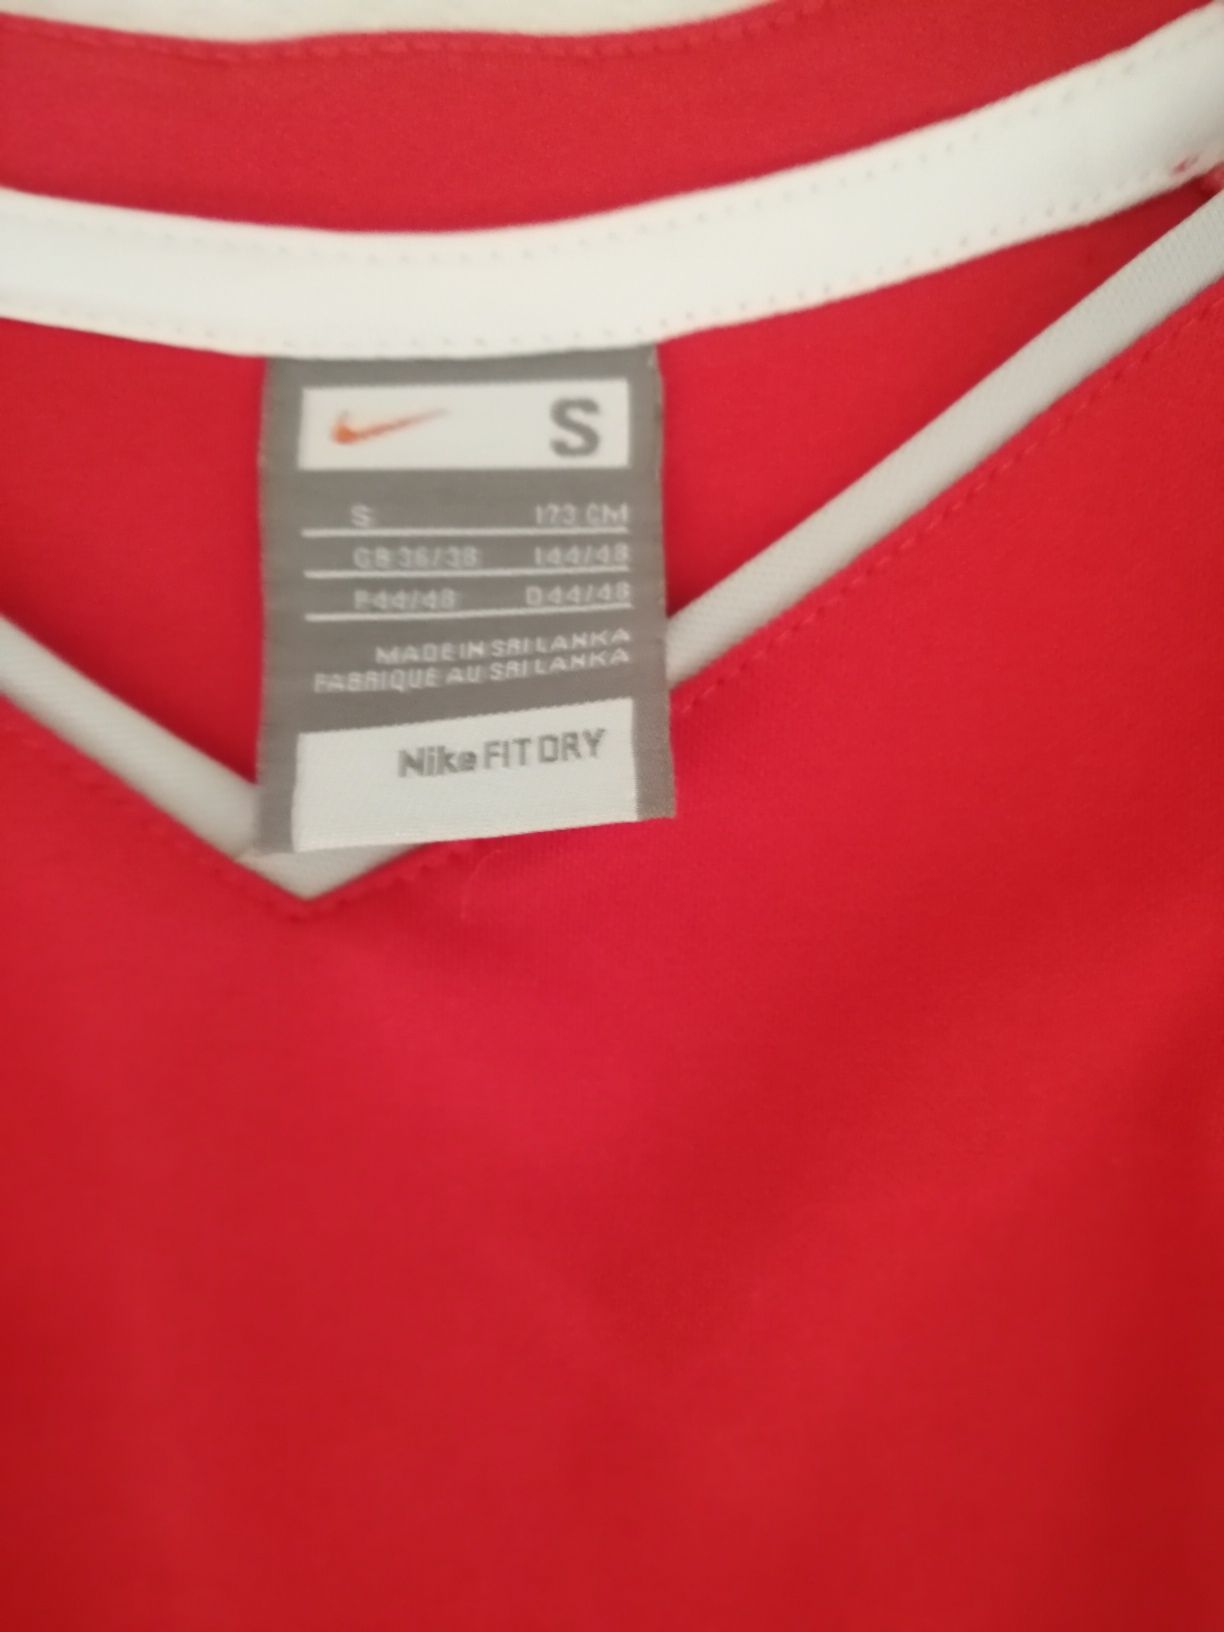 Nike Factory, koszulka treningowa S